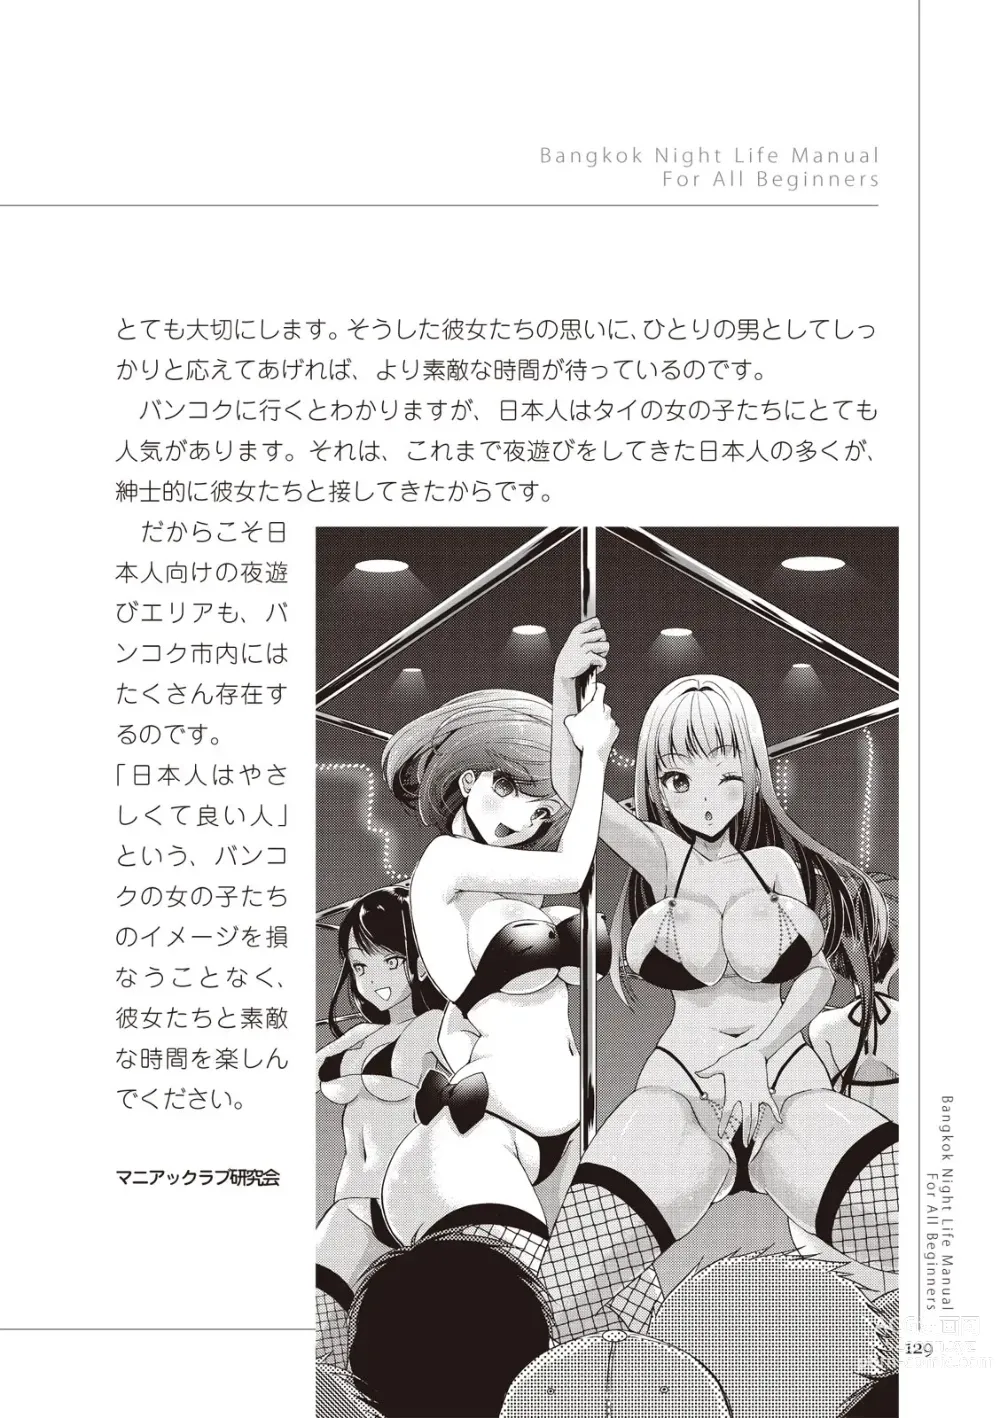 Page 129 of manga いかなくても解る図説風俗マニュアル・海外編 はじめての男子旅行